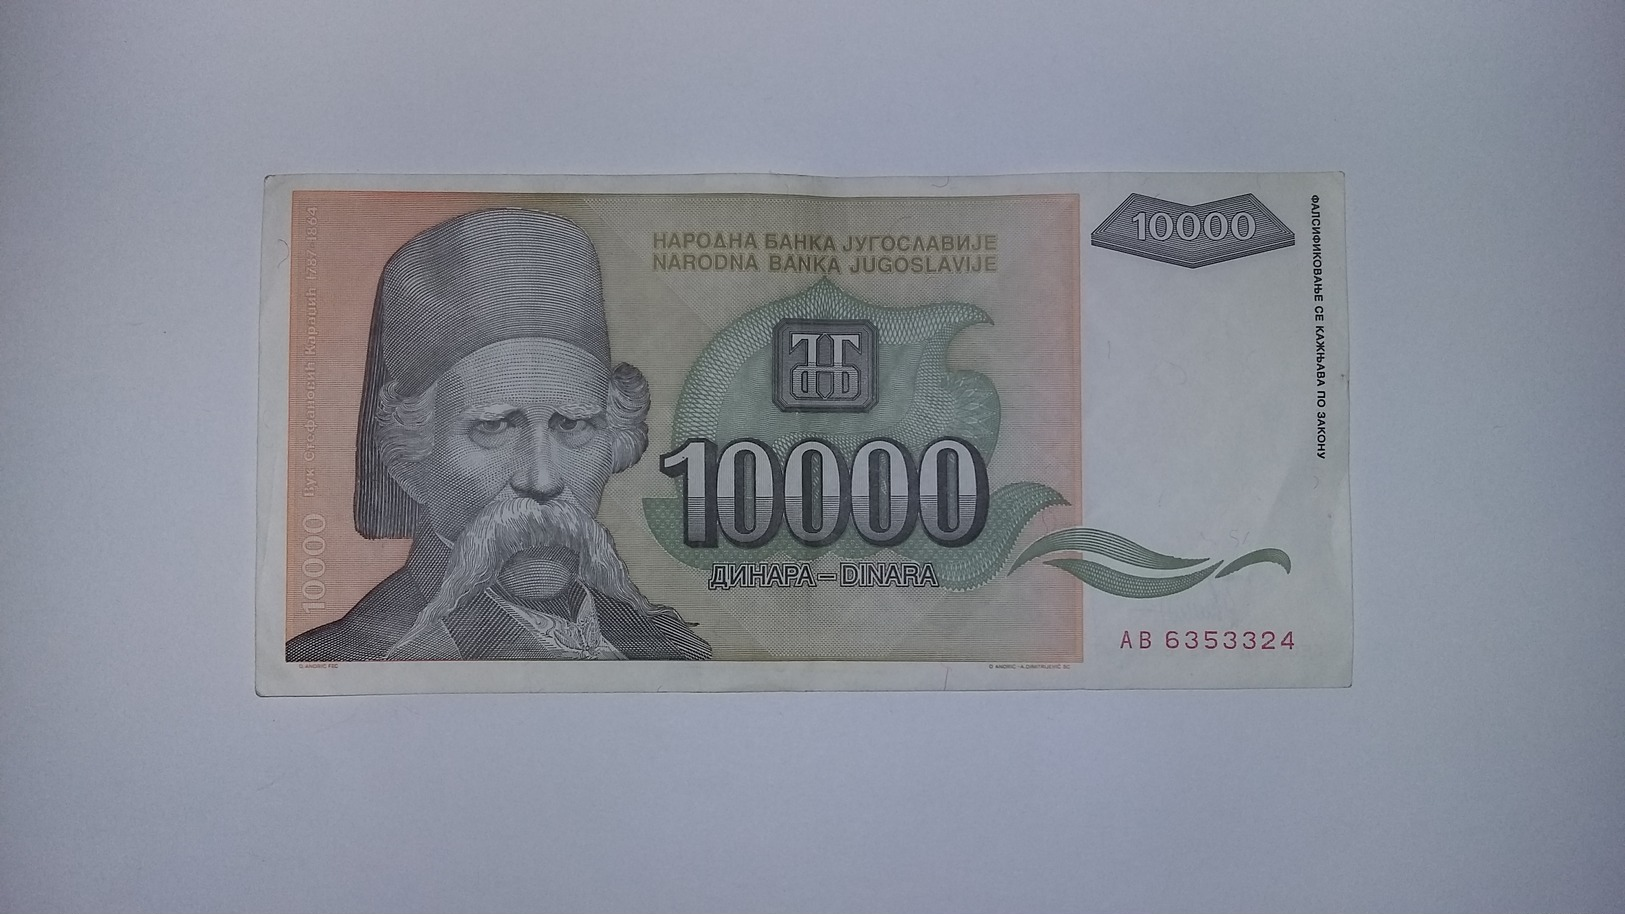 Yugoslavia Inflation Banknote - Yugoslavia